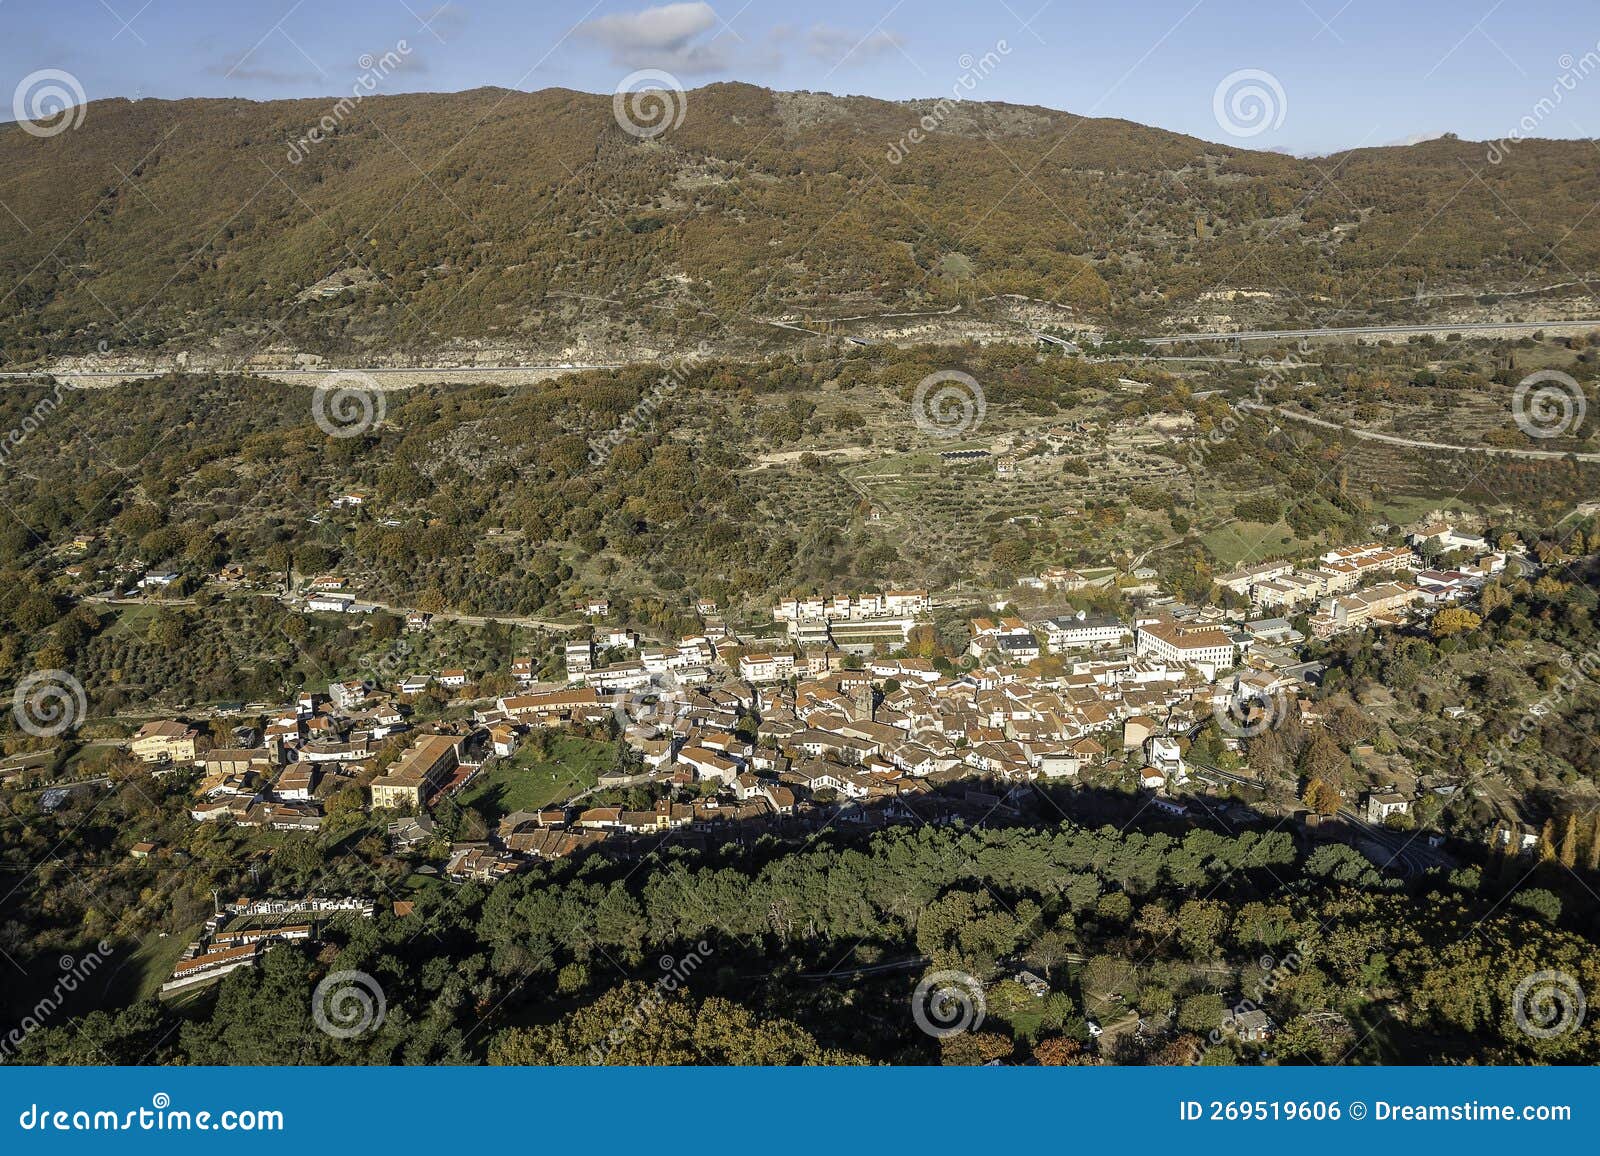 aerial drone view autumnal mountainous landscape 